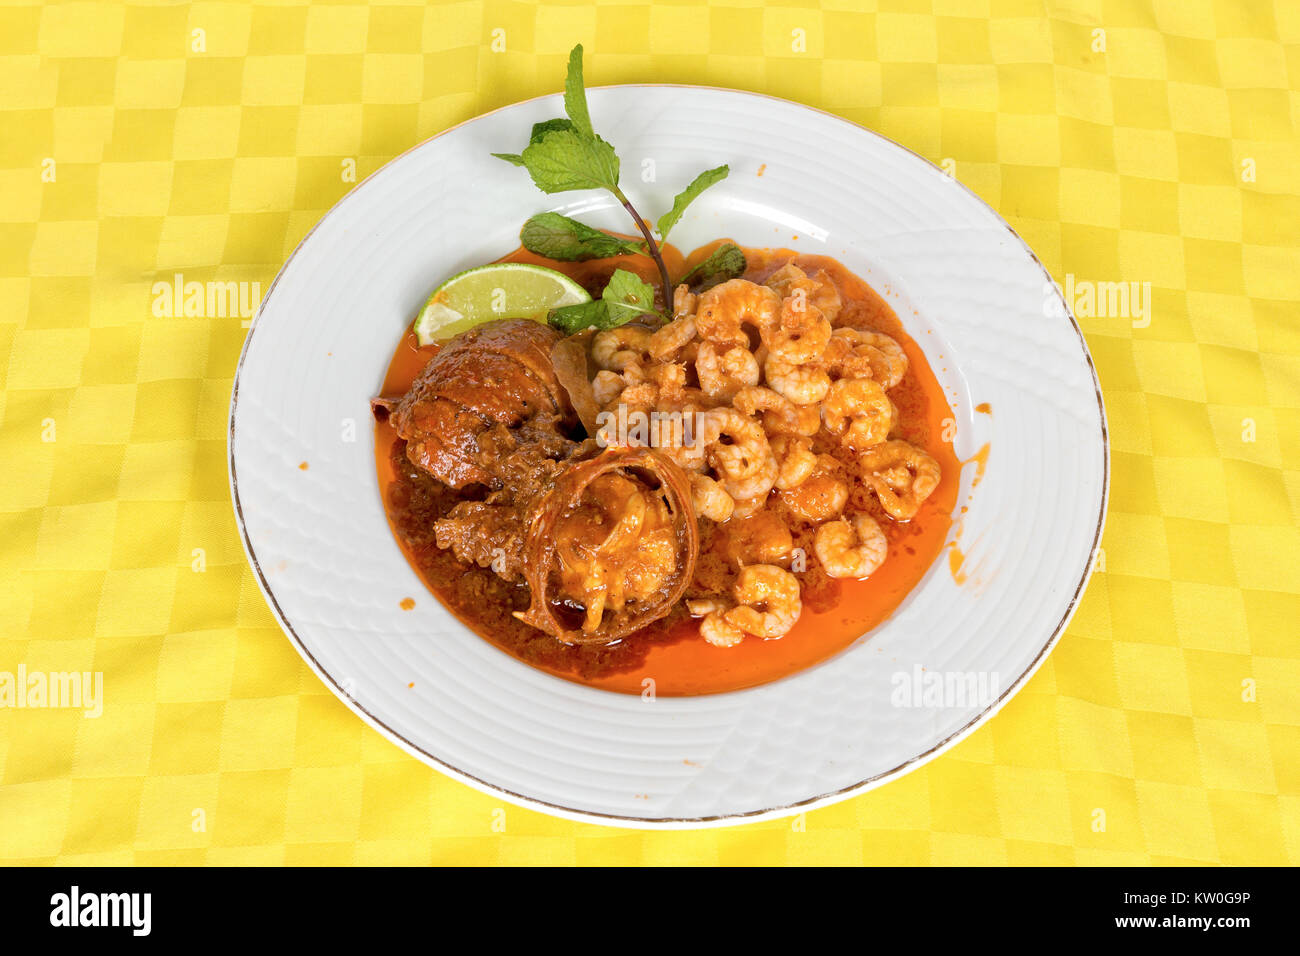 Queues de homard et crevettes mélangées à la sauce tomate dans un plat blanc Banque D'Images